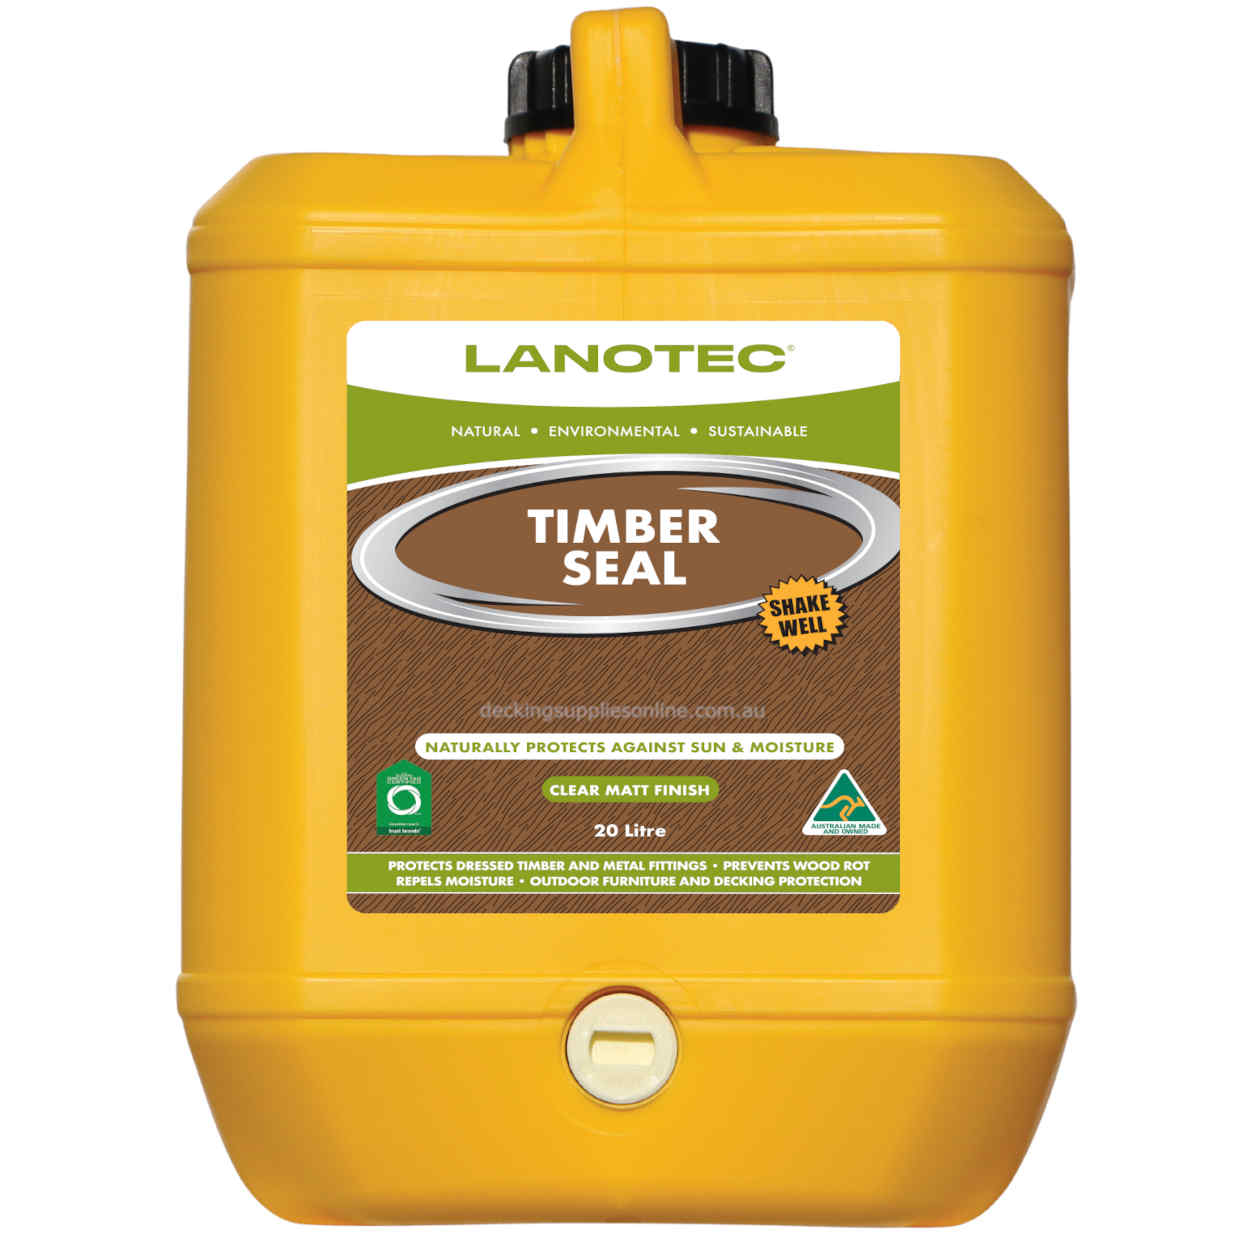     Lanotec_Timber_Seal_20_Liter_Decking_Supplies_Online